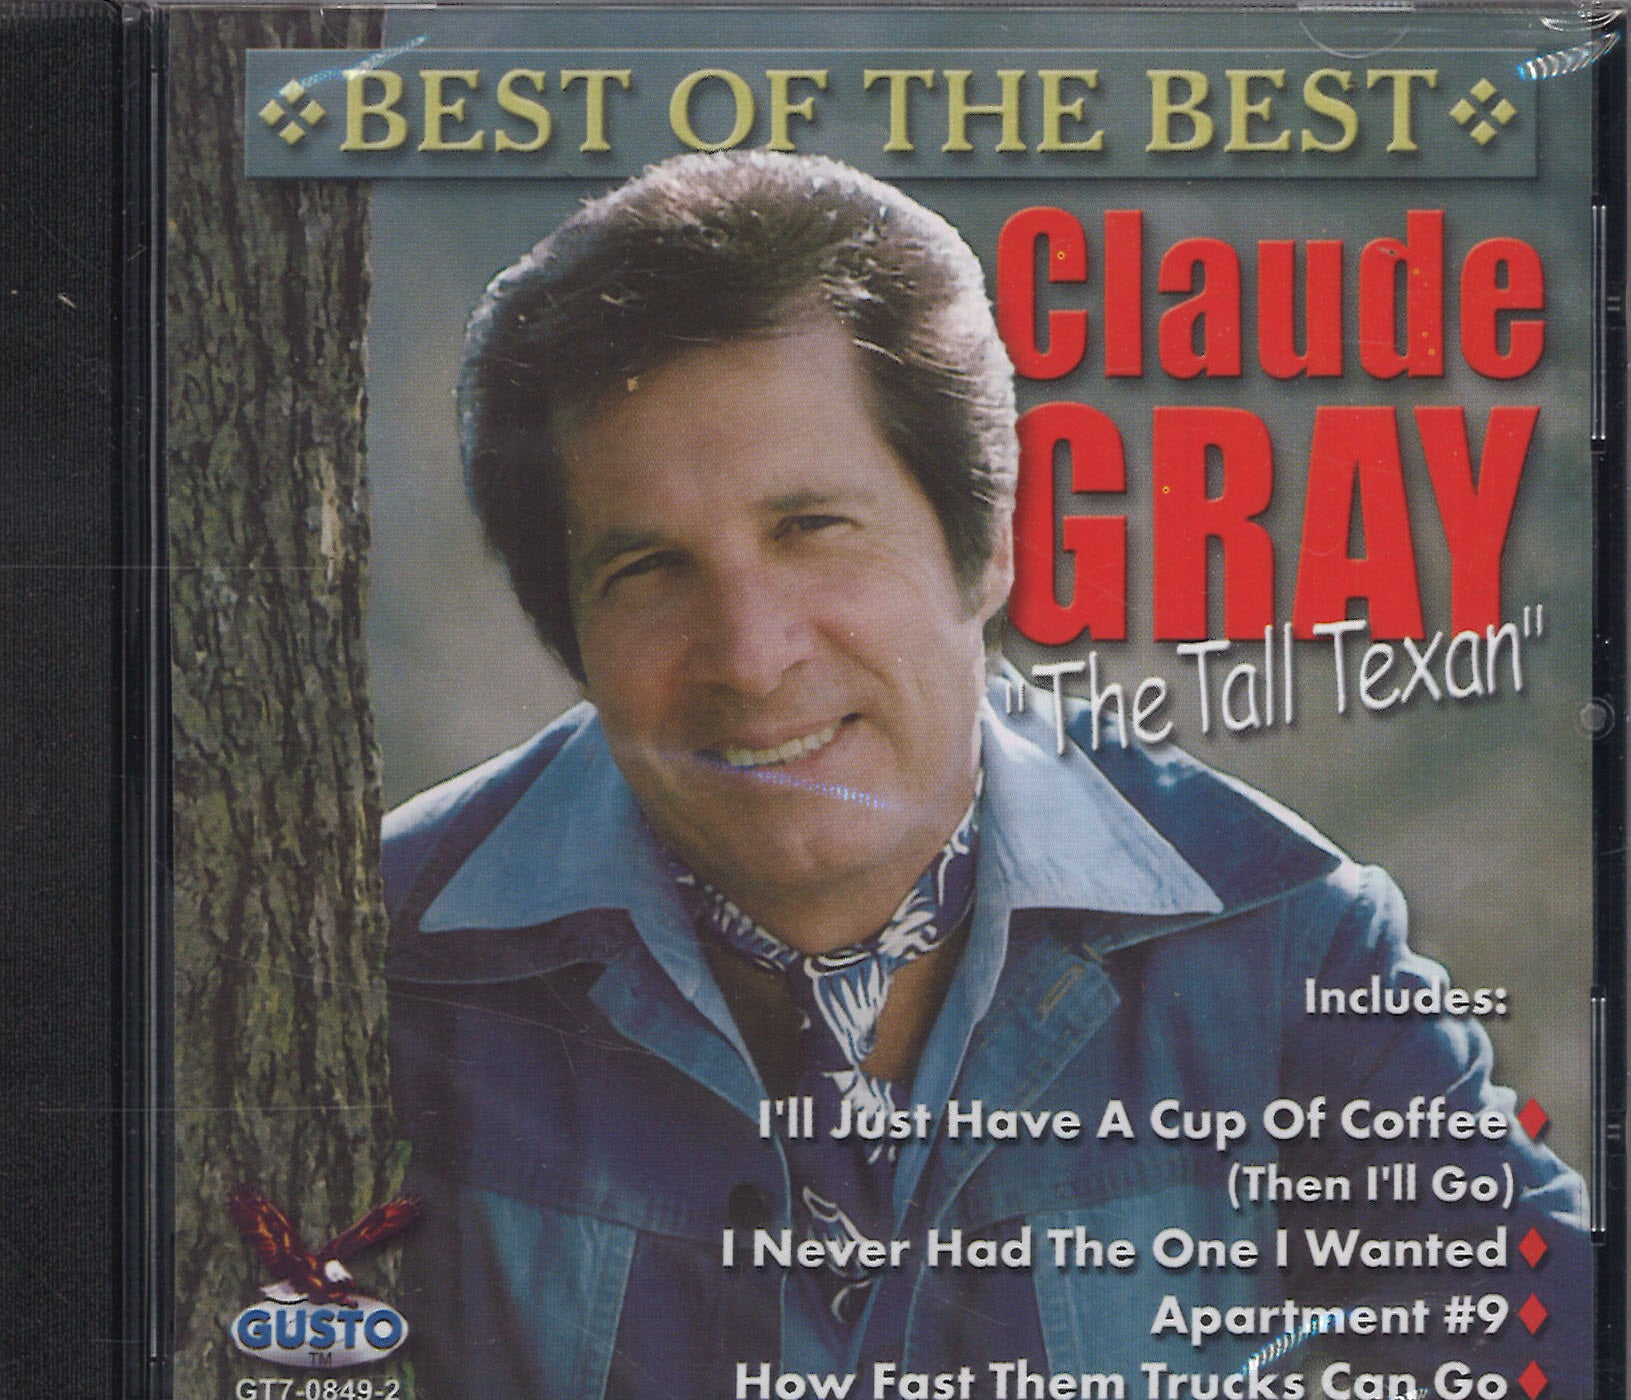 Claude Gray Best Of The Best